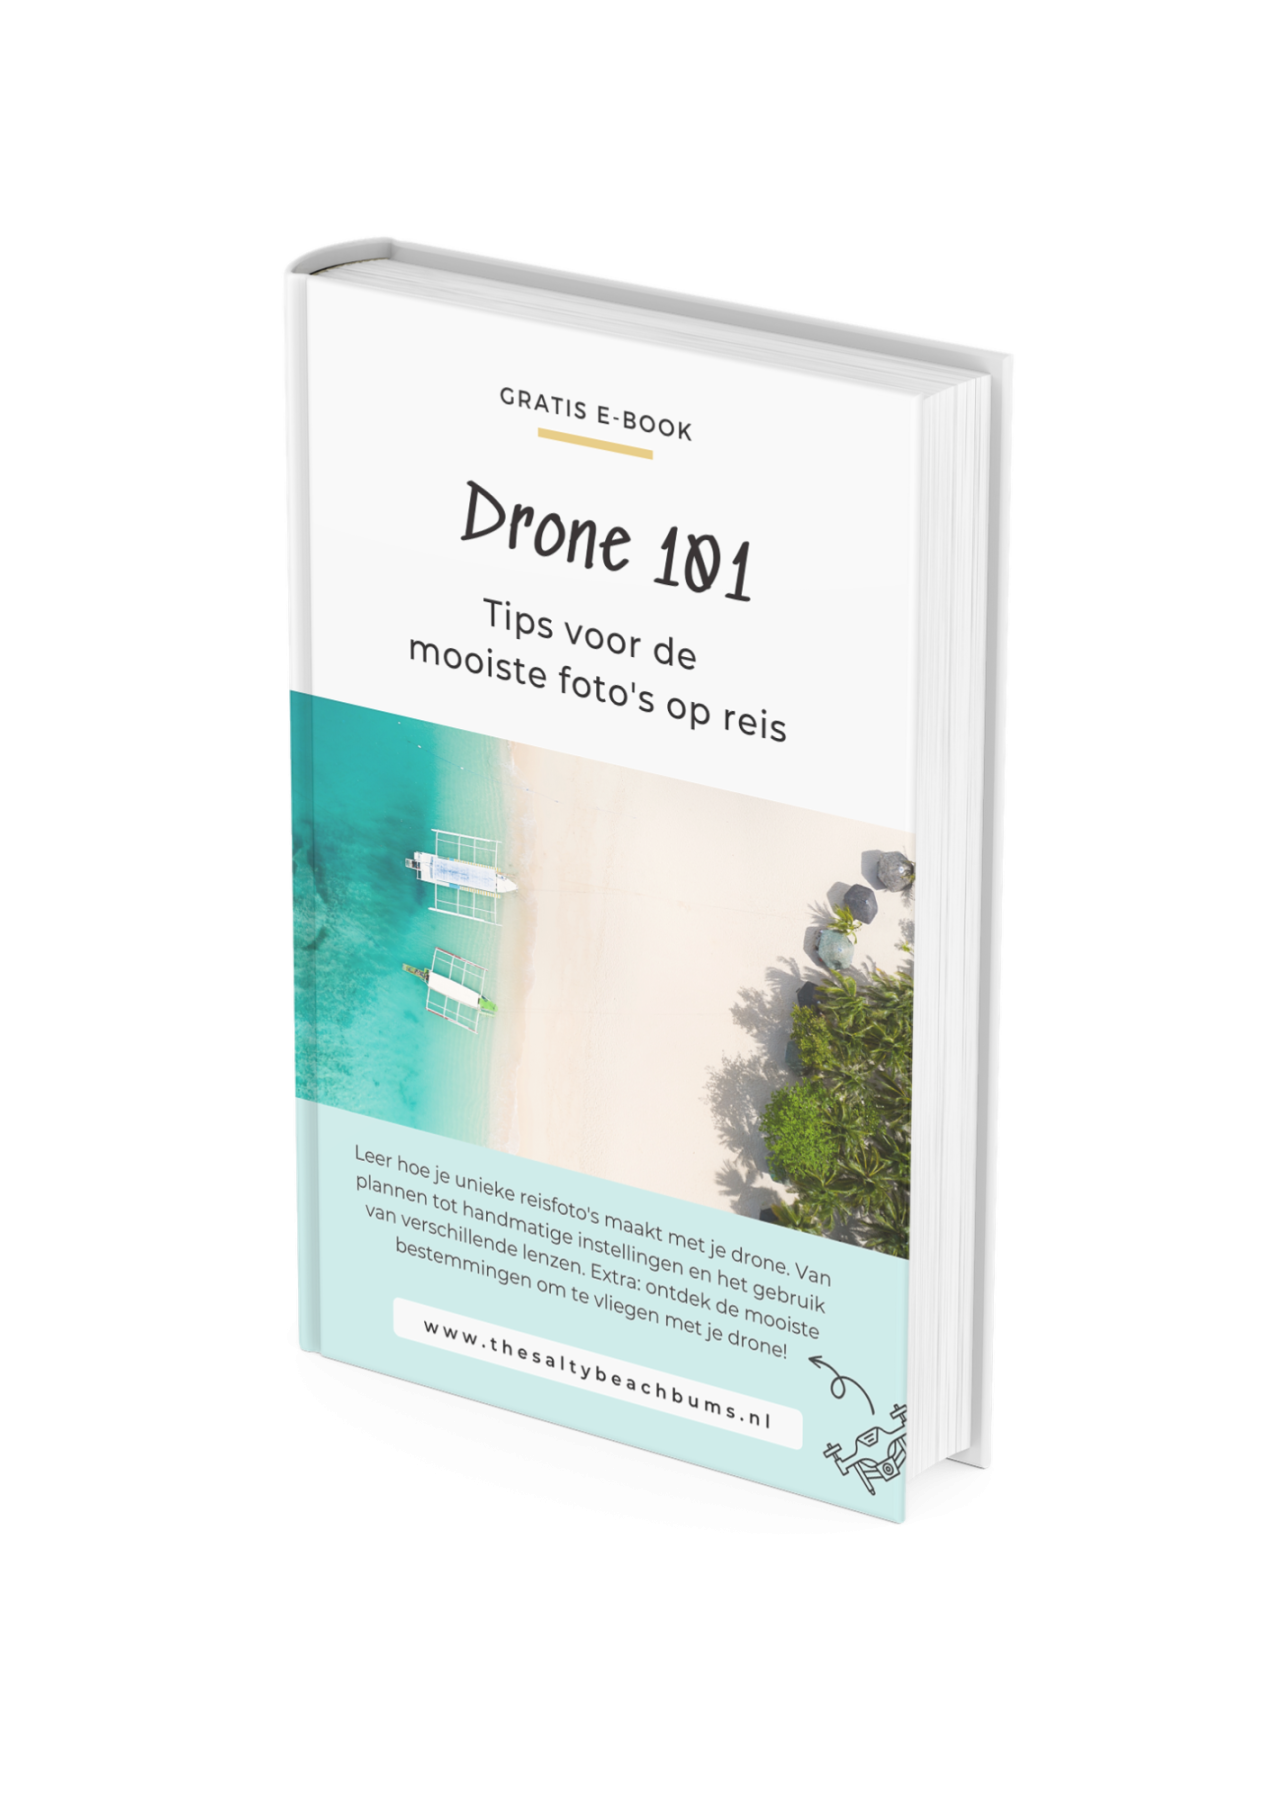 E-Book dronefotografie op reis